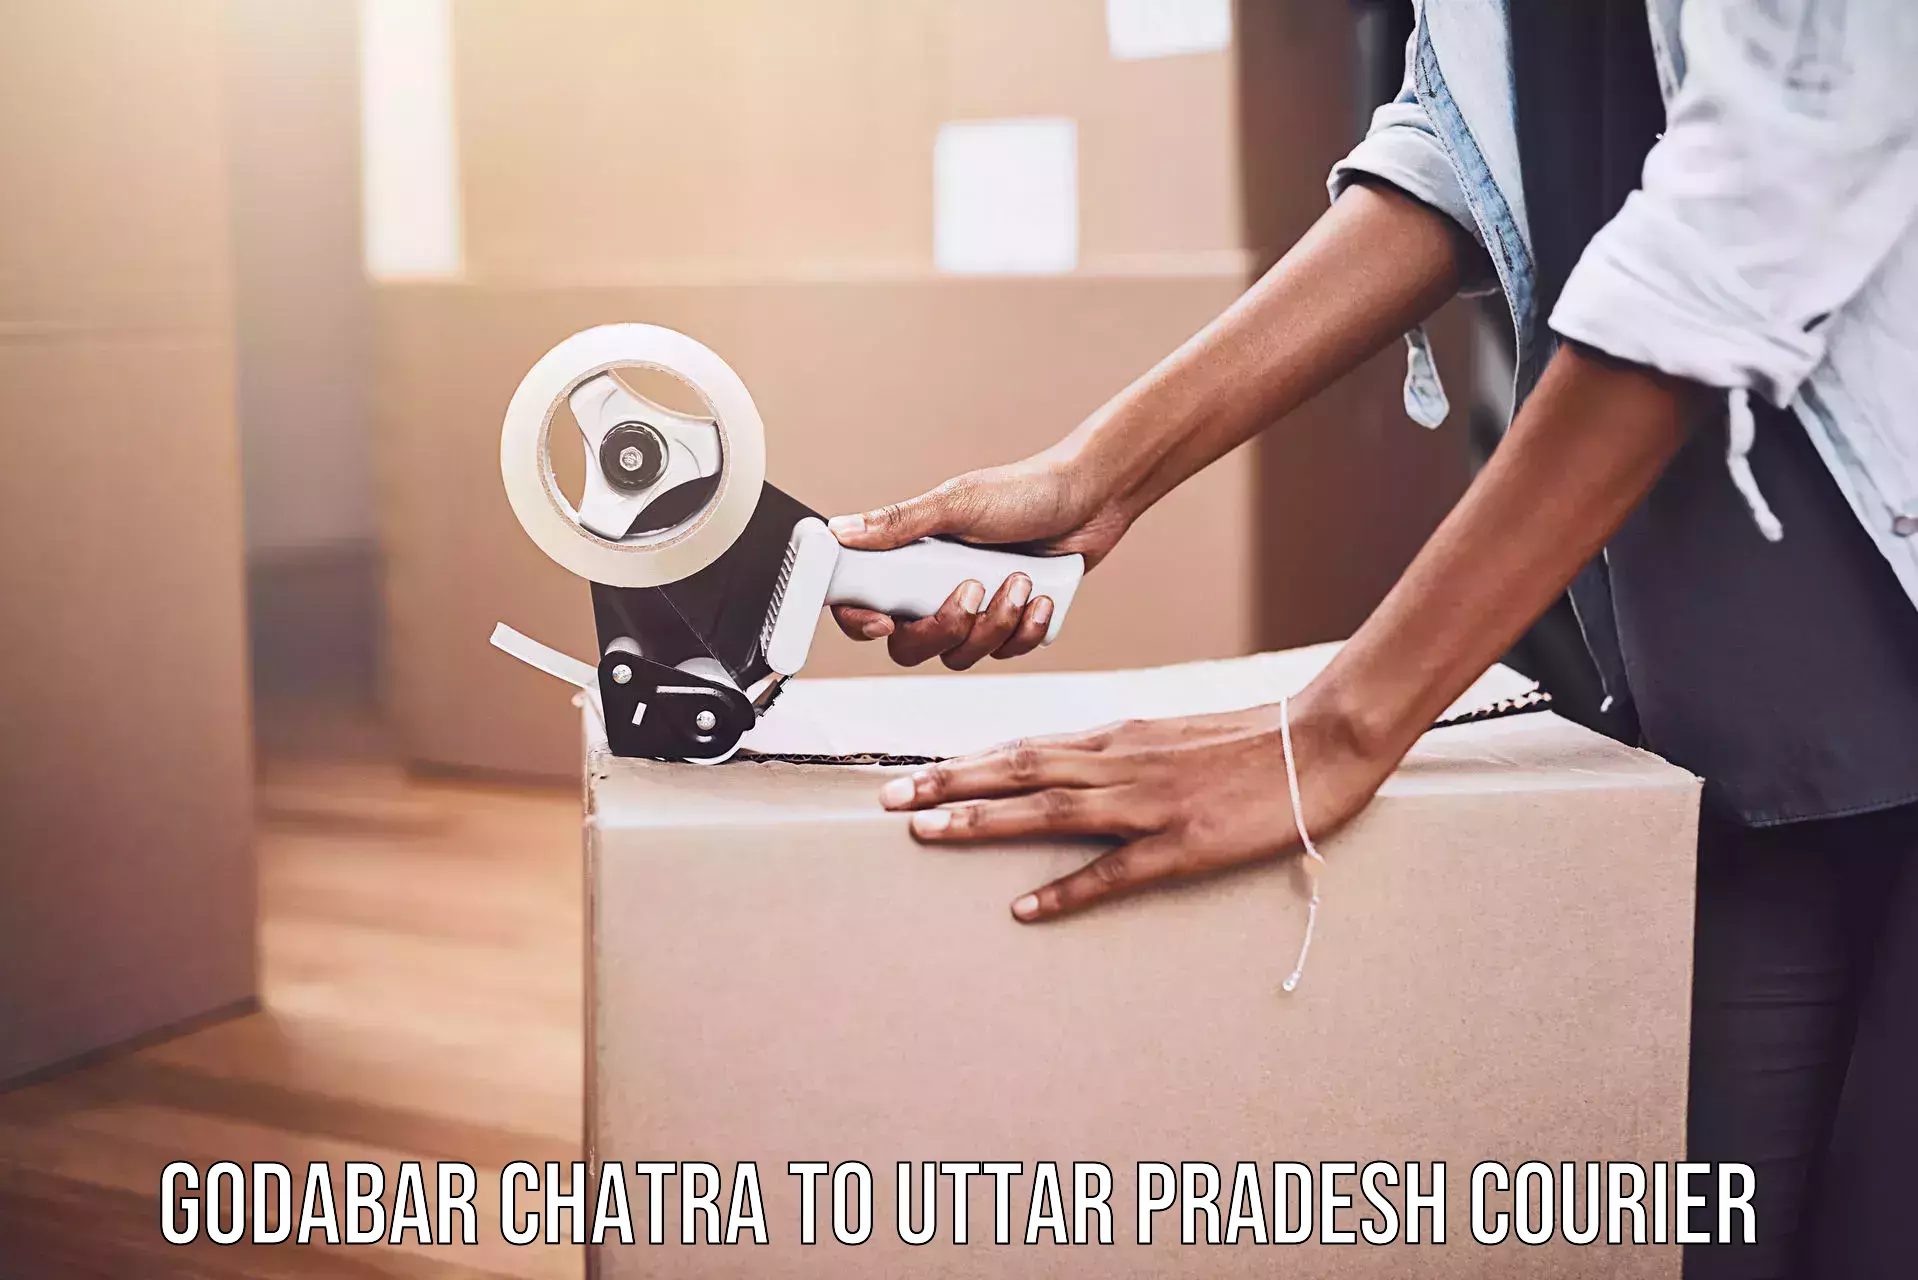 Custom courier rates Godabar Chatra to Saifai